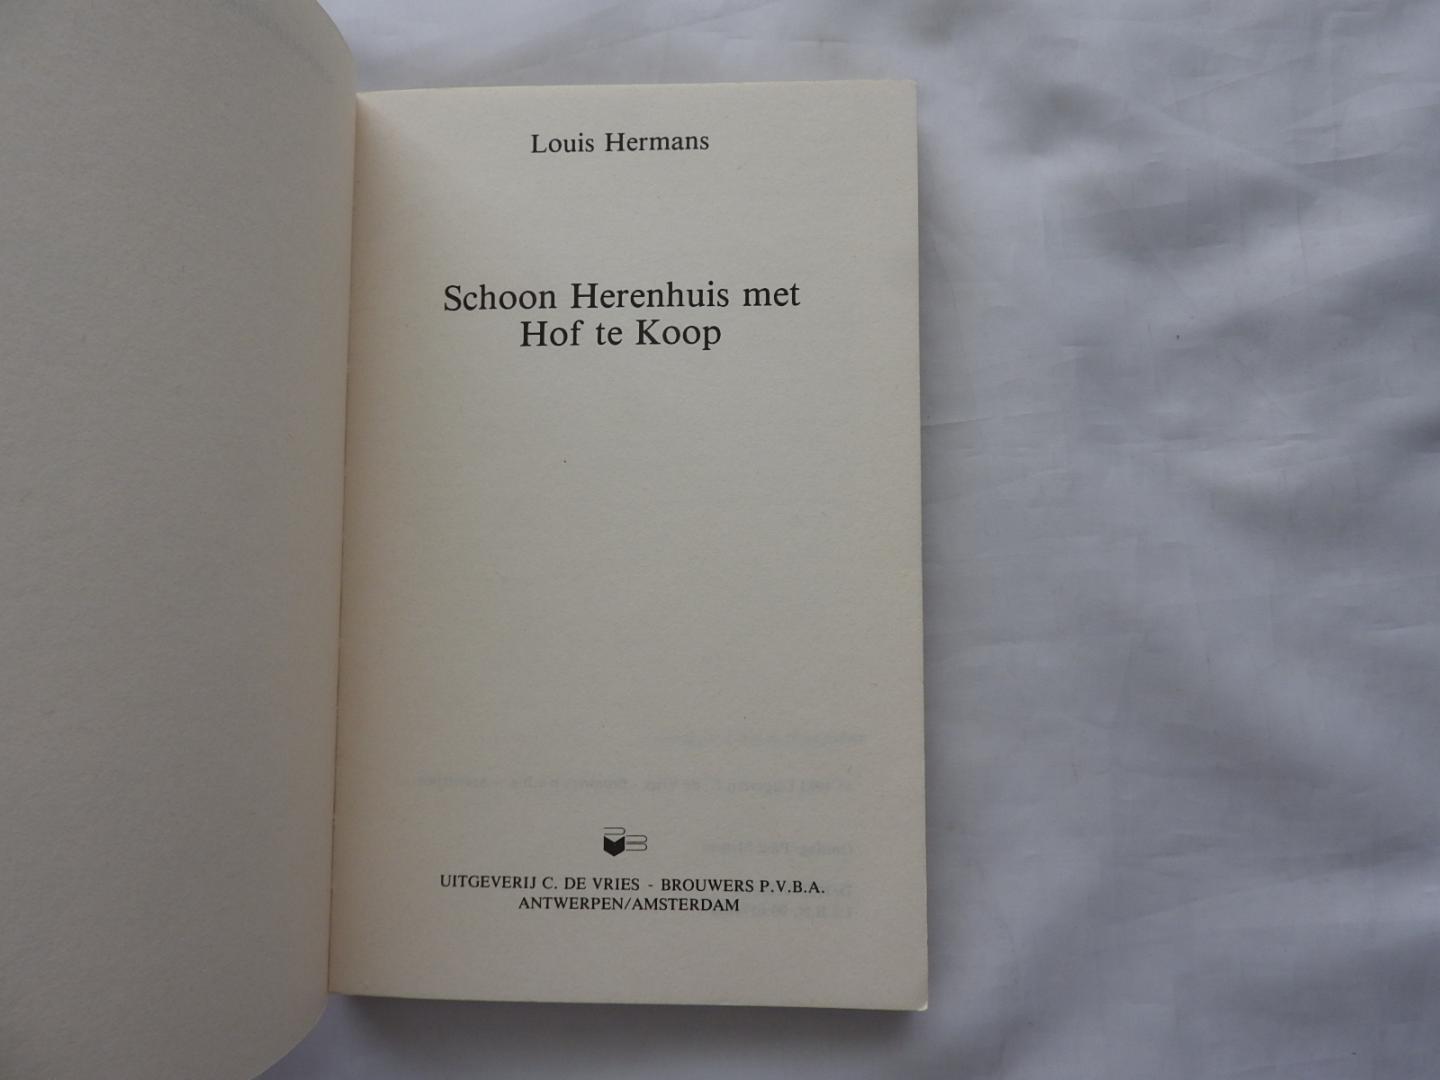 Louis Hermans L. - Schoon herenhuis met hof te koop